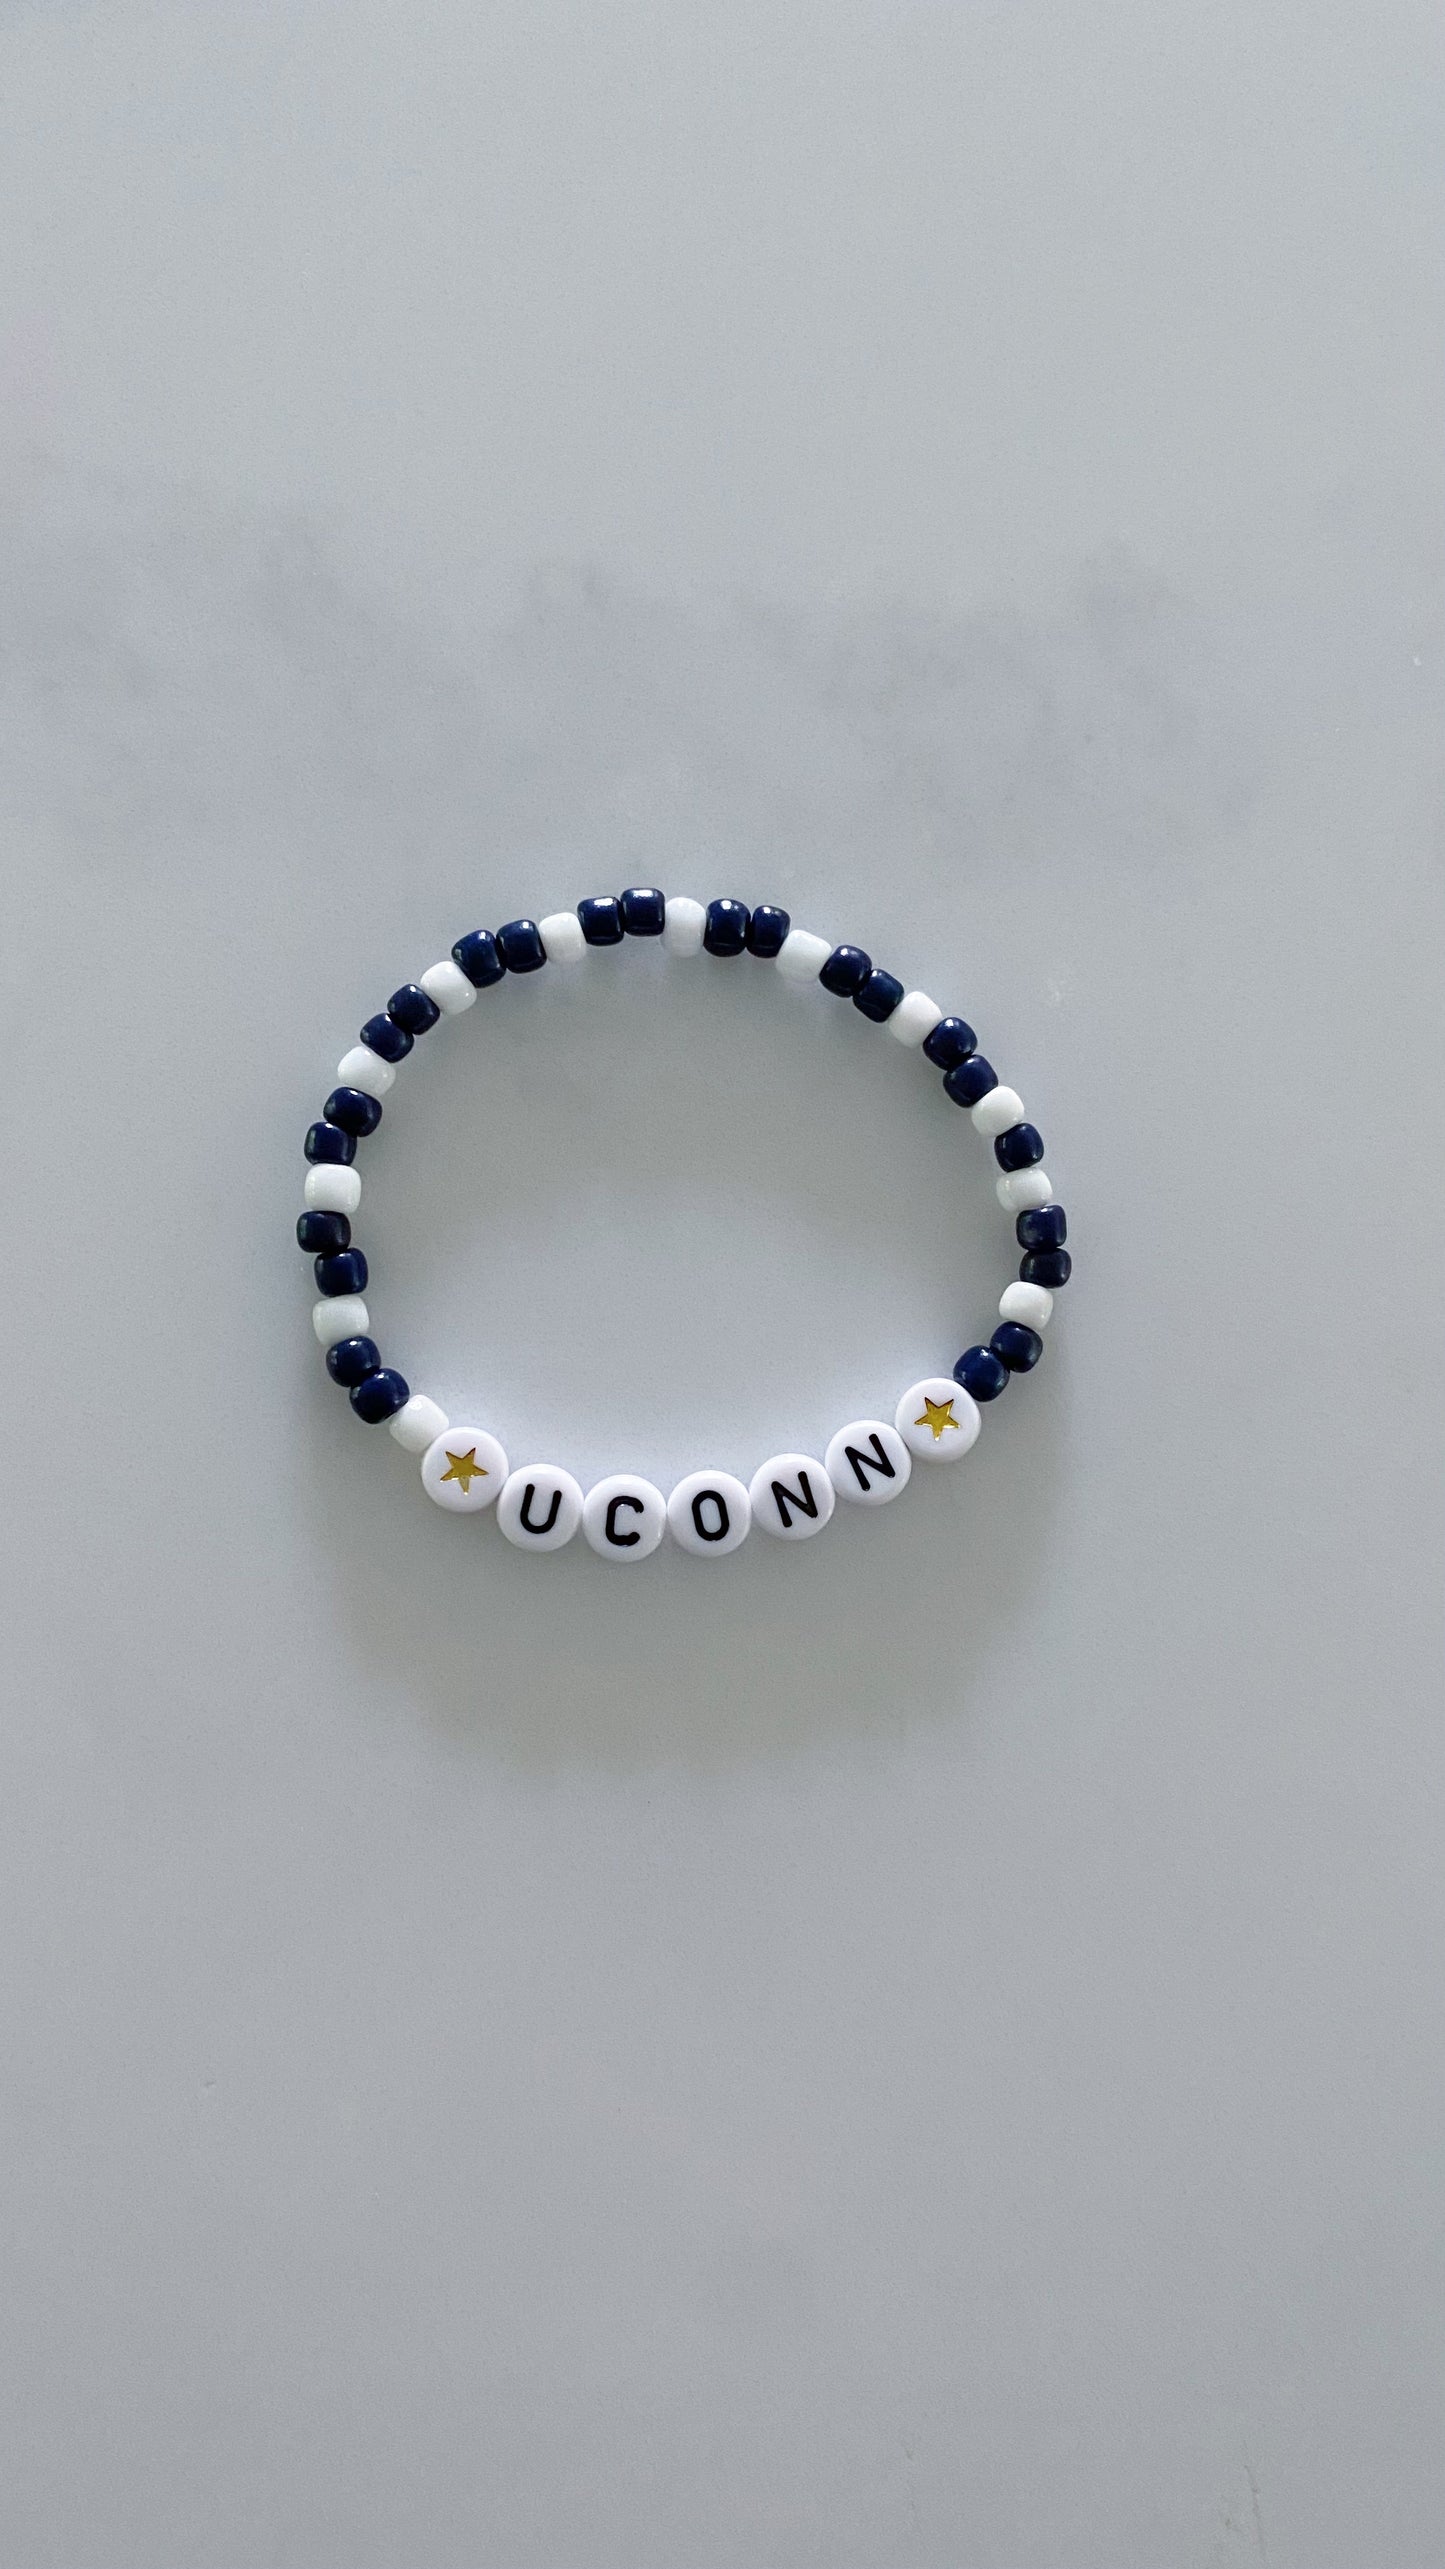 Uconn beaded bracelets